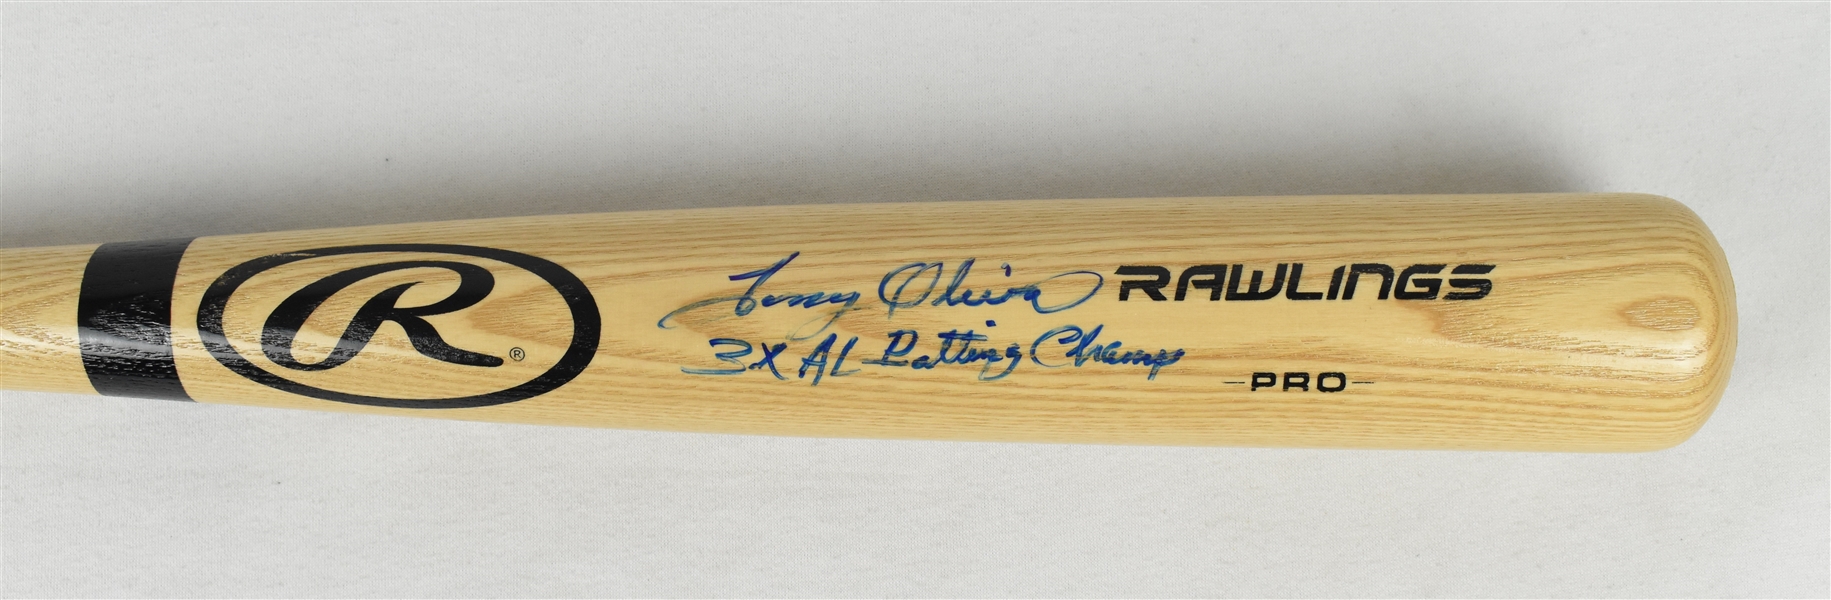 Tony Oliva Autographed & Inscribed Baseball Bat